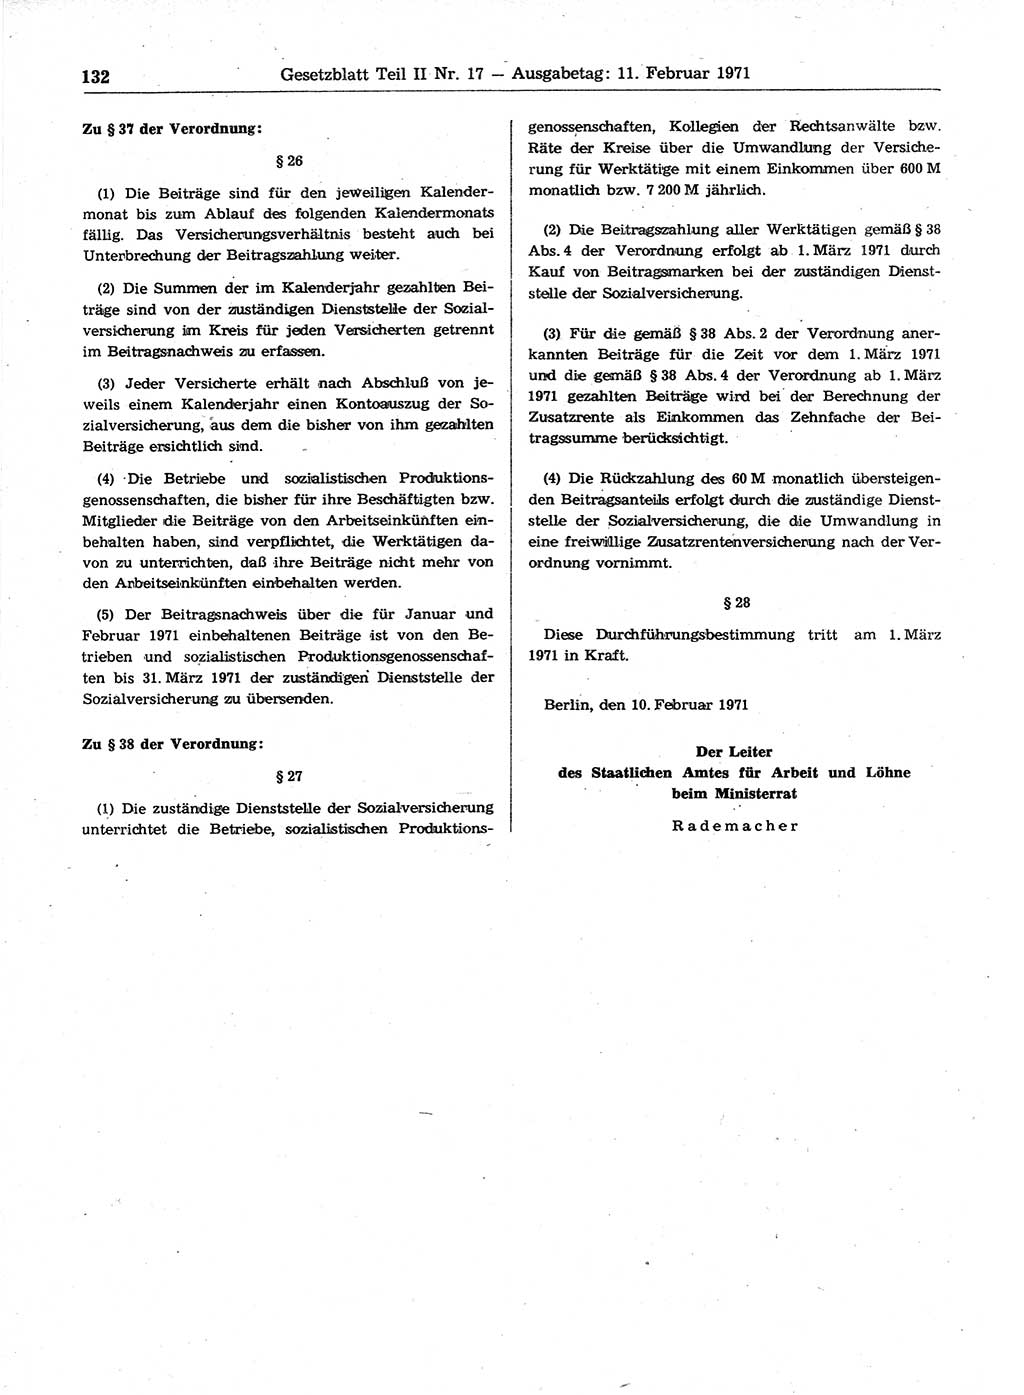 Gesetzblatt (GBl.) der Deutschen Demokratischen Republik (DDR) Teil ⅠⅠ 1971, Seite 132 (GBl. DDR ⅠⅠ 1971, S. 132)